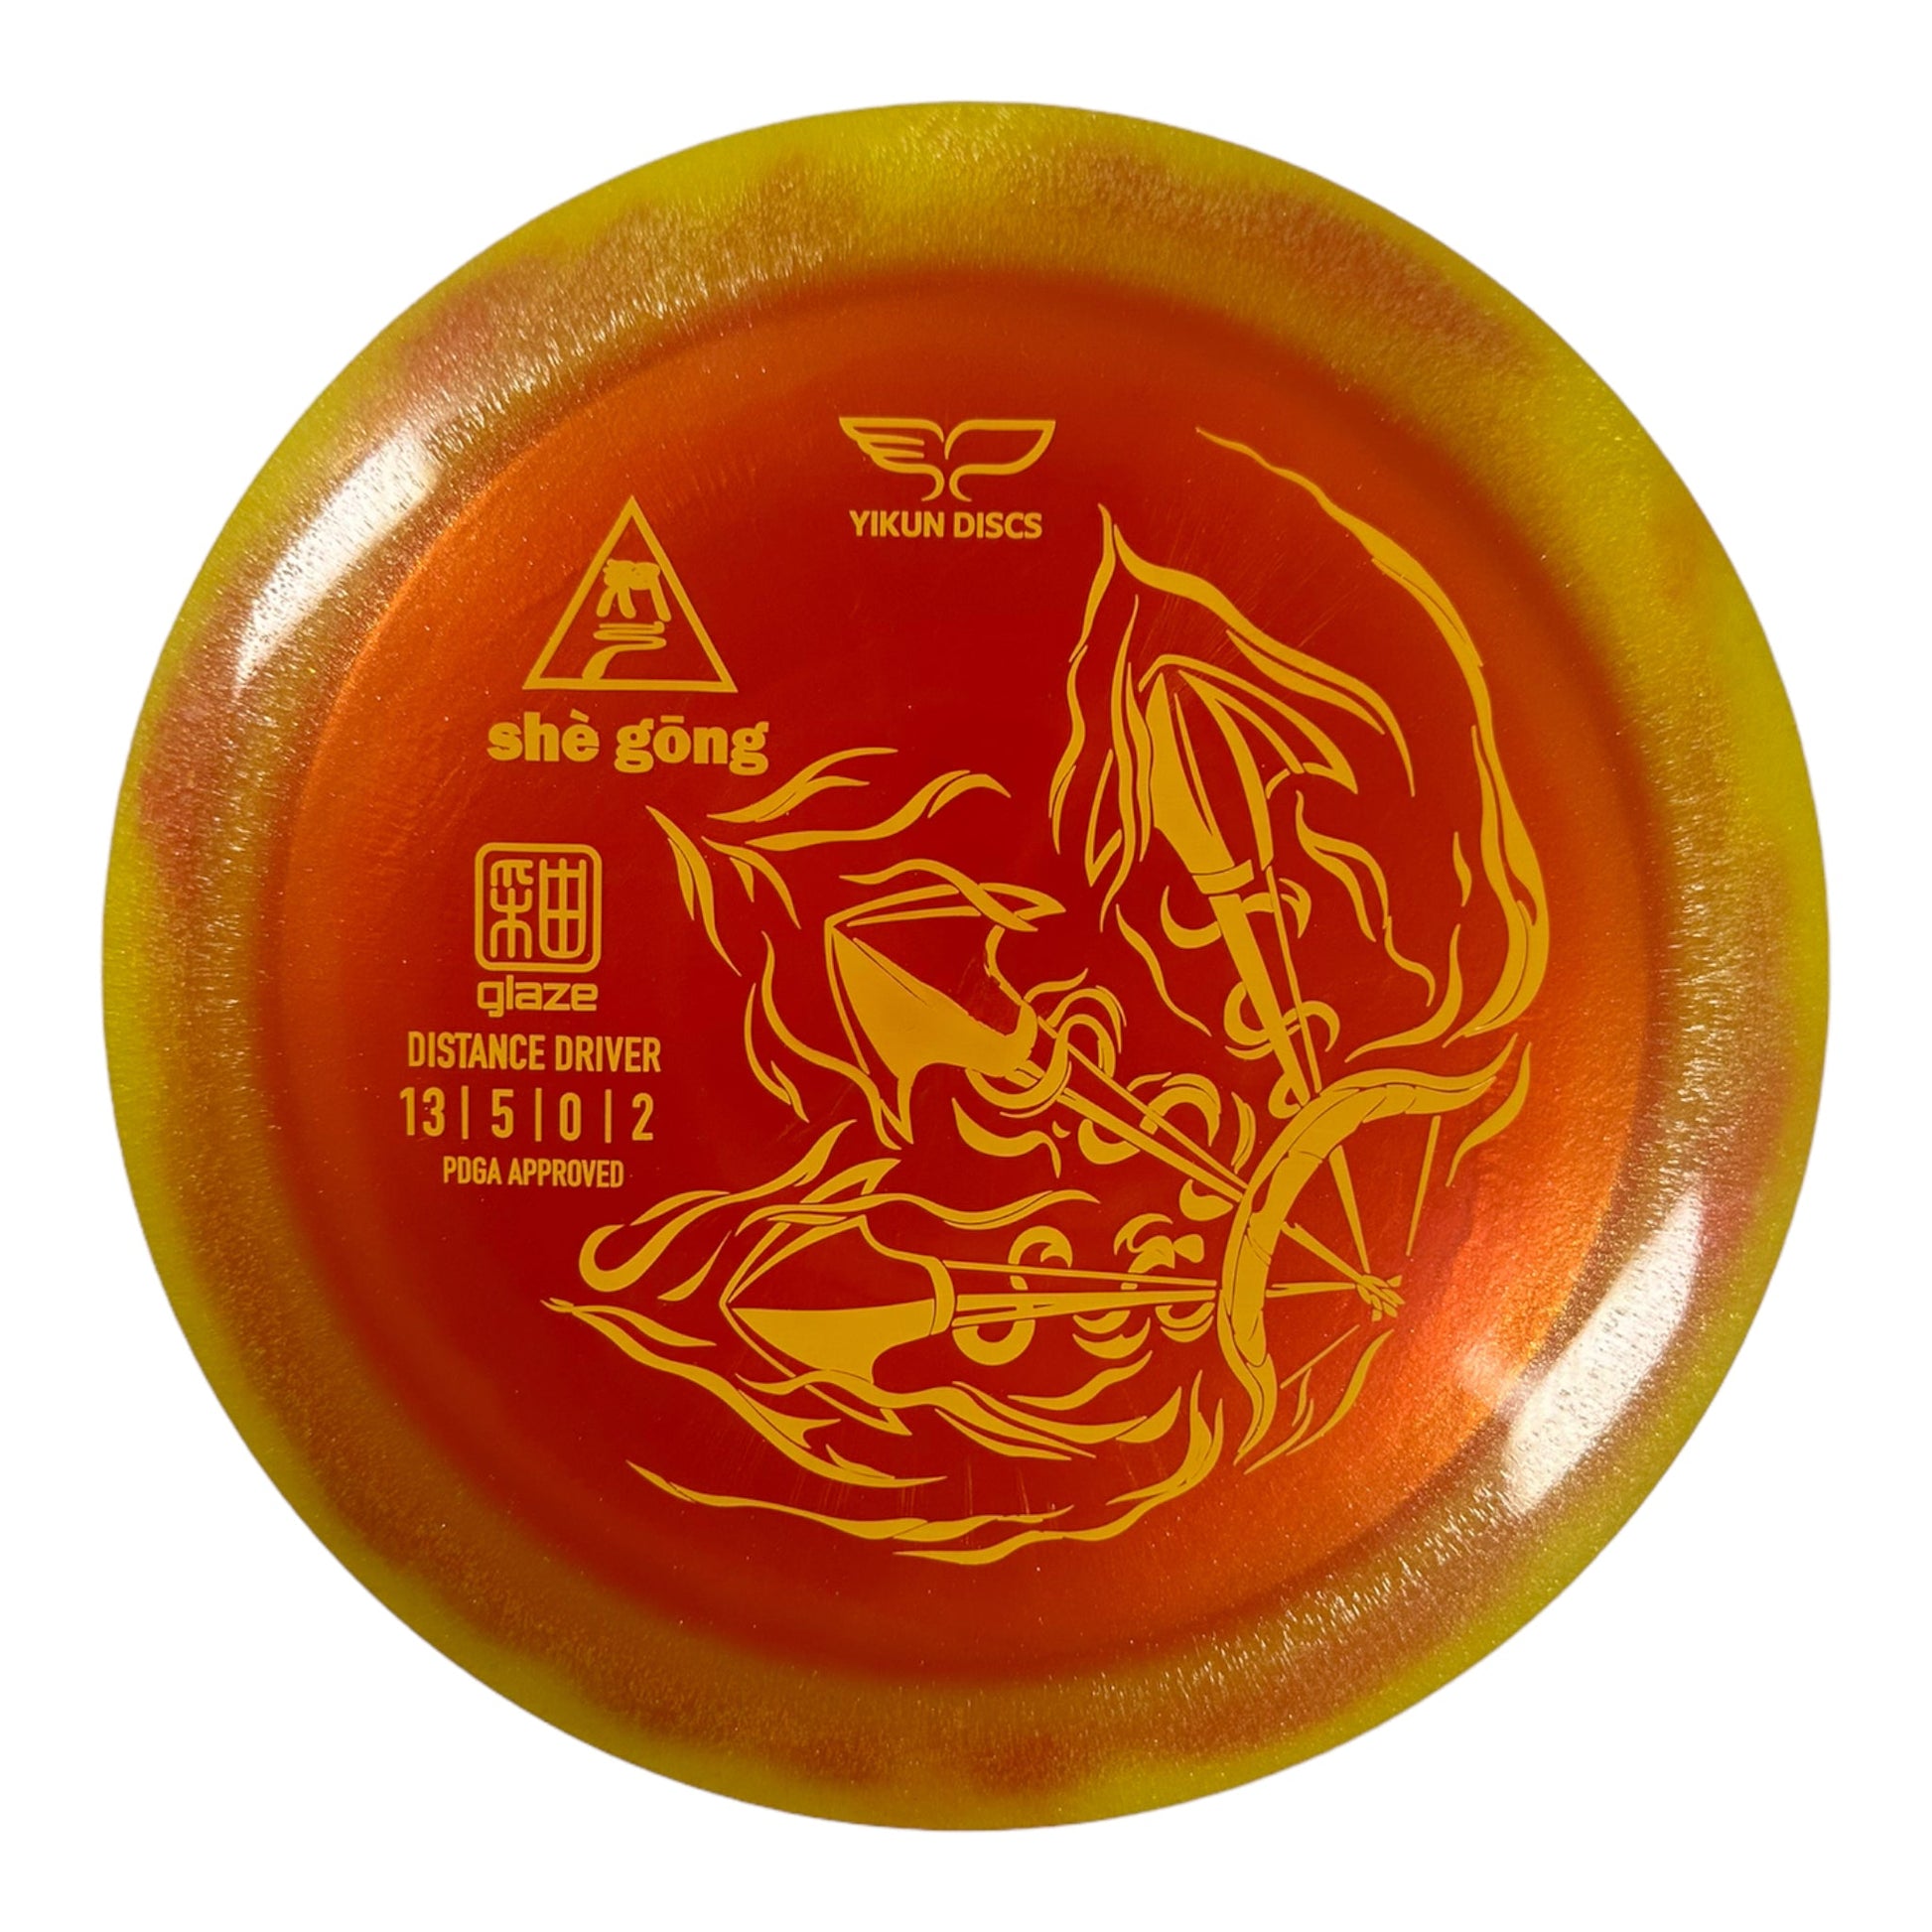 Yikun Discs She Gong | Glaze | Red/Yellow 175g Disc Golf